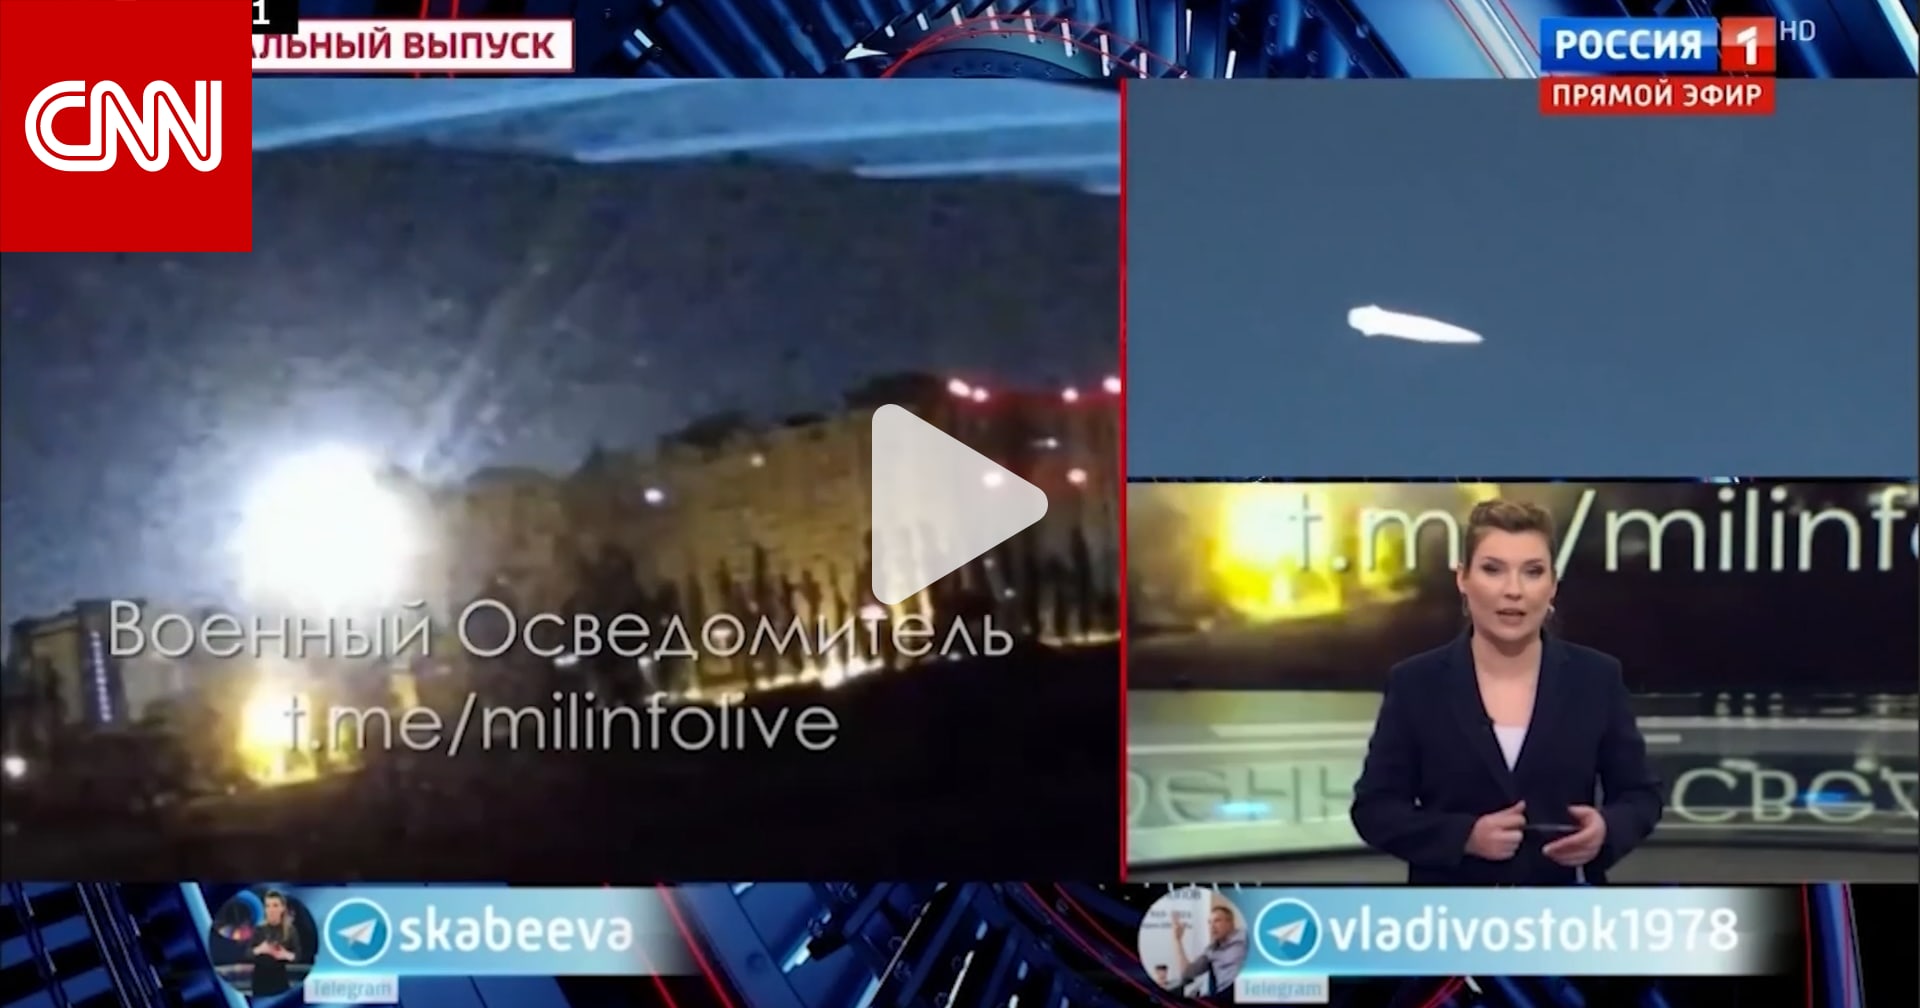 شاهد كيف تغطي وسائل الإعلام الروسية الأضرار التي لحقت بمنظومة باتريوت في أوكرانيا